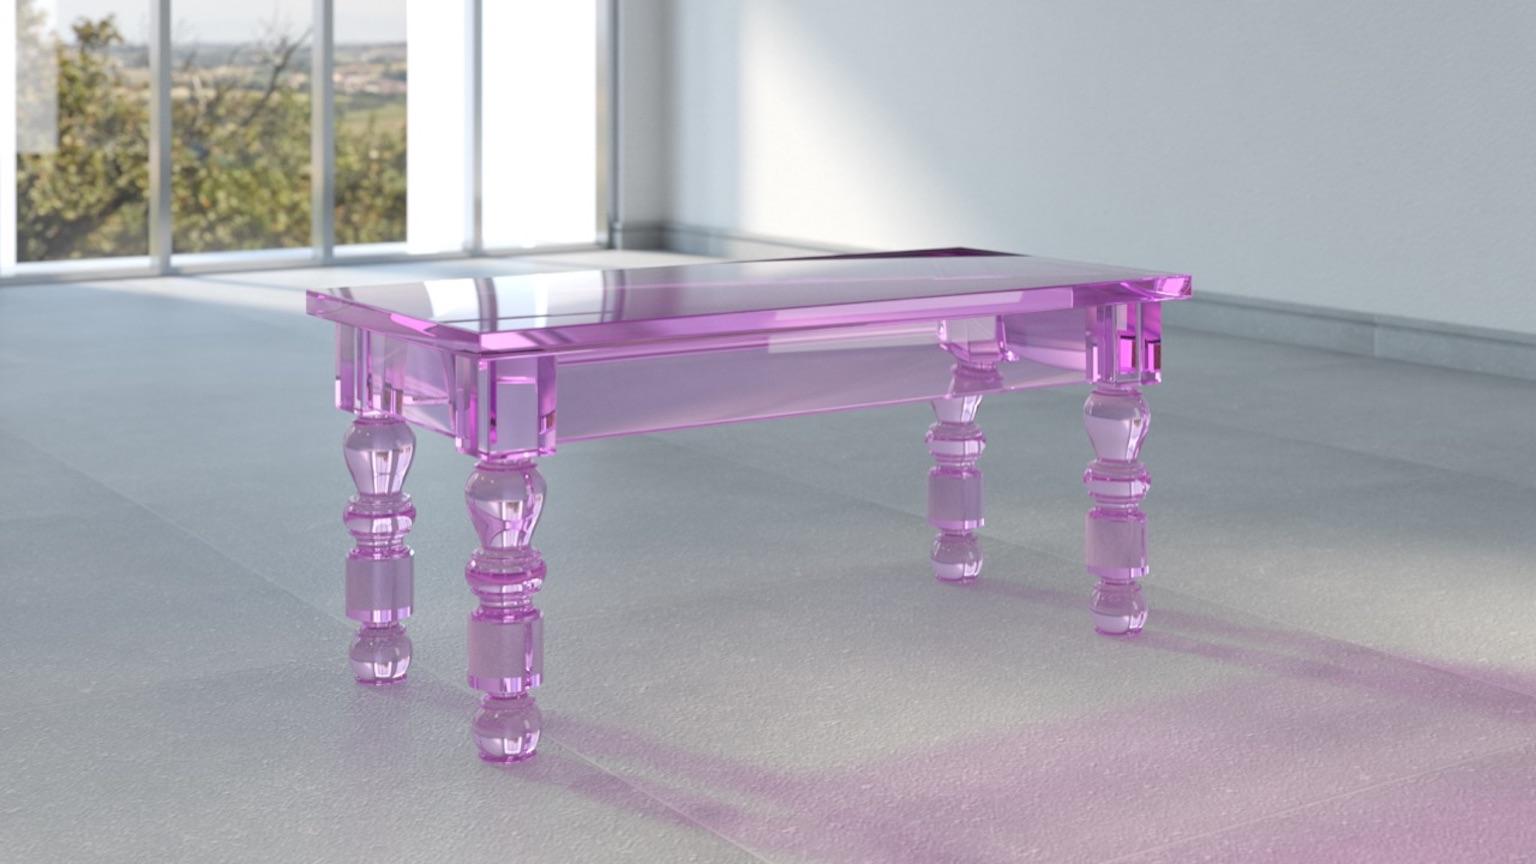 Couchtisch Modell Post Rural, entworfen von Studio Superego für Superego Editions. Ein Tisch aus farbigem Plexiglas, der das ländliche Design neu interpretiert.

Biografie
Superego editions wurde 2006 gegründet und führt eine konstante